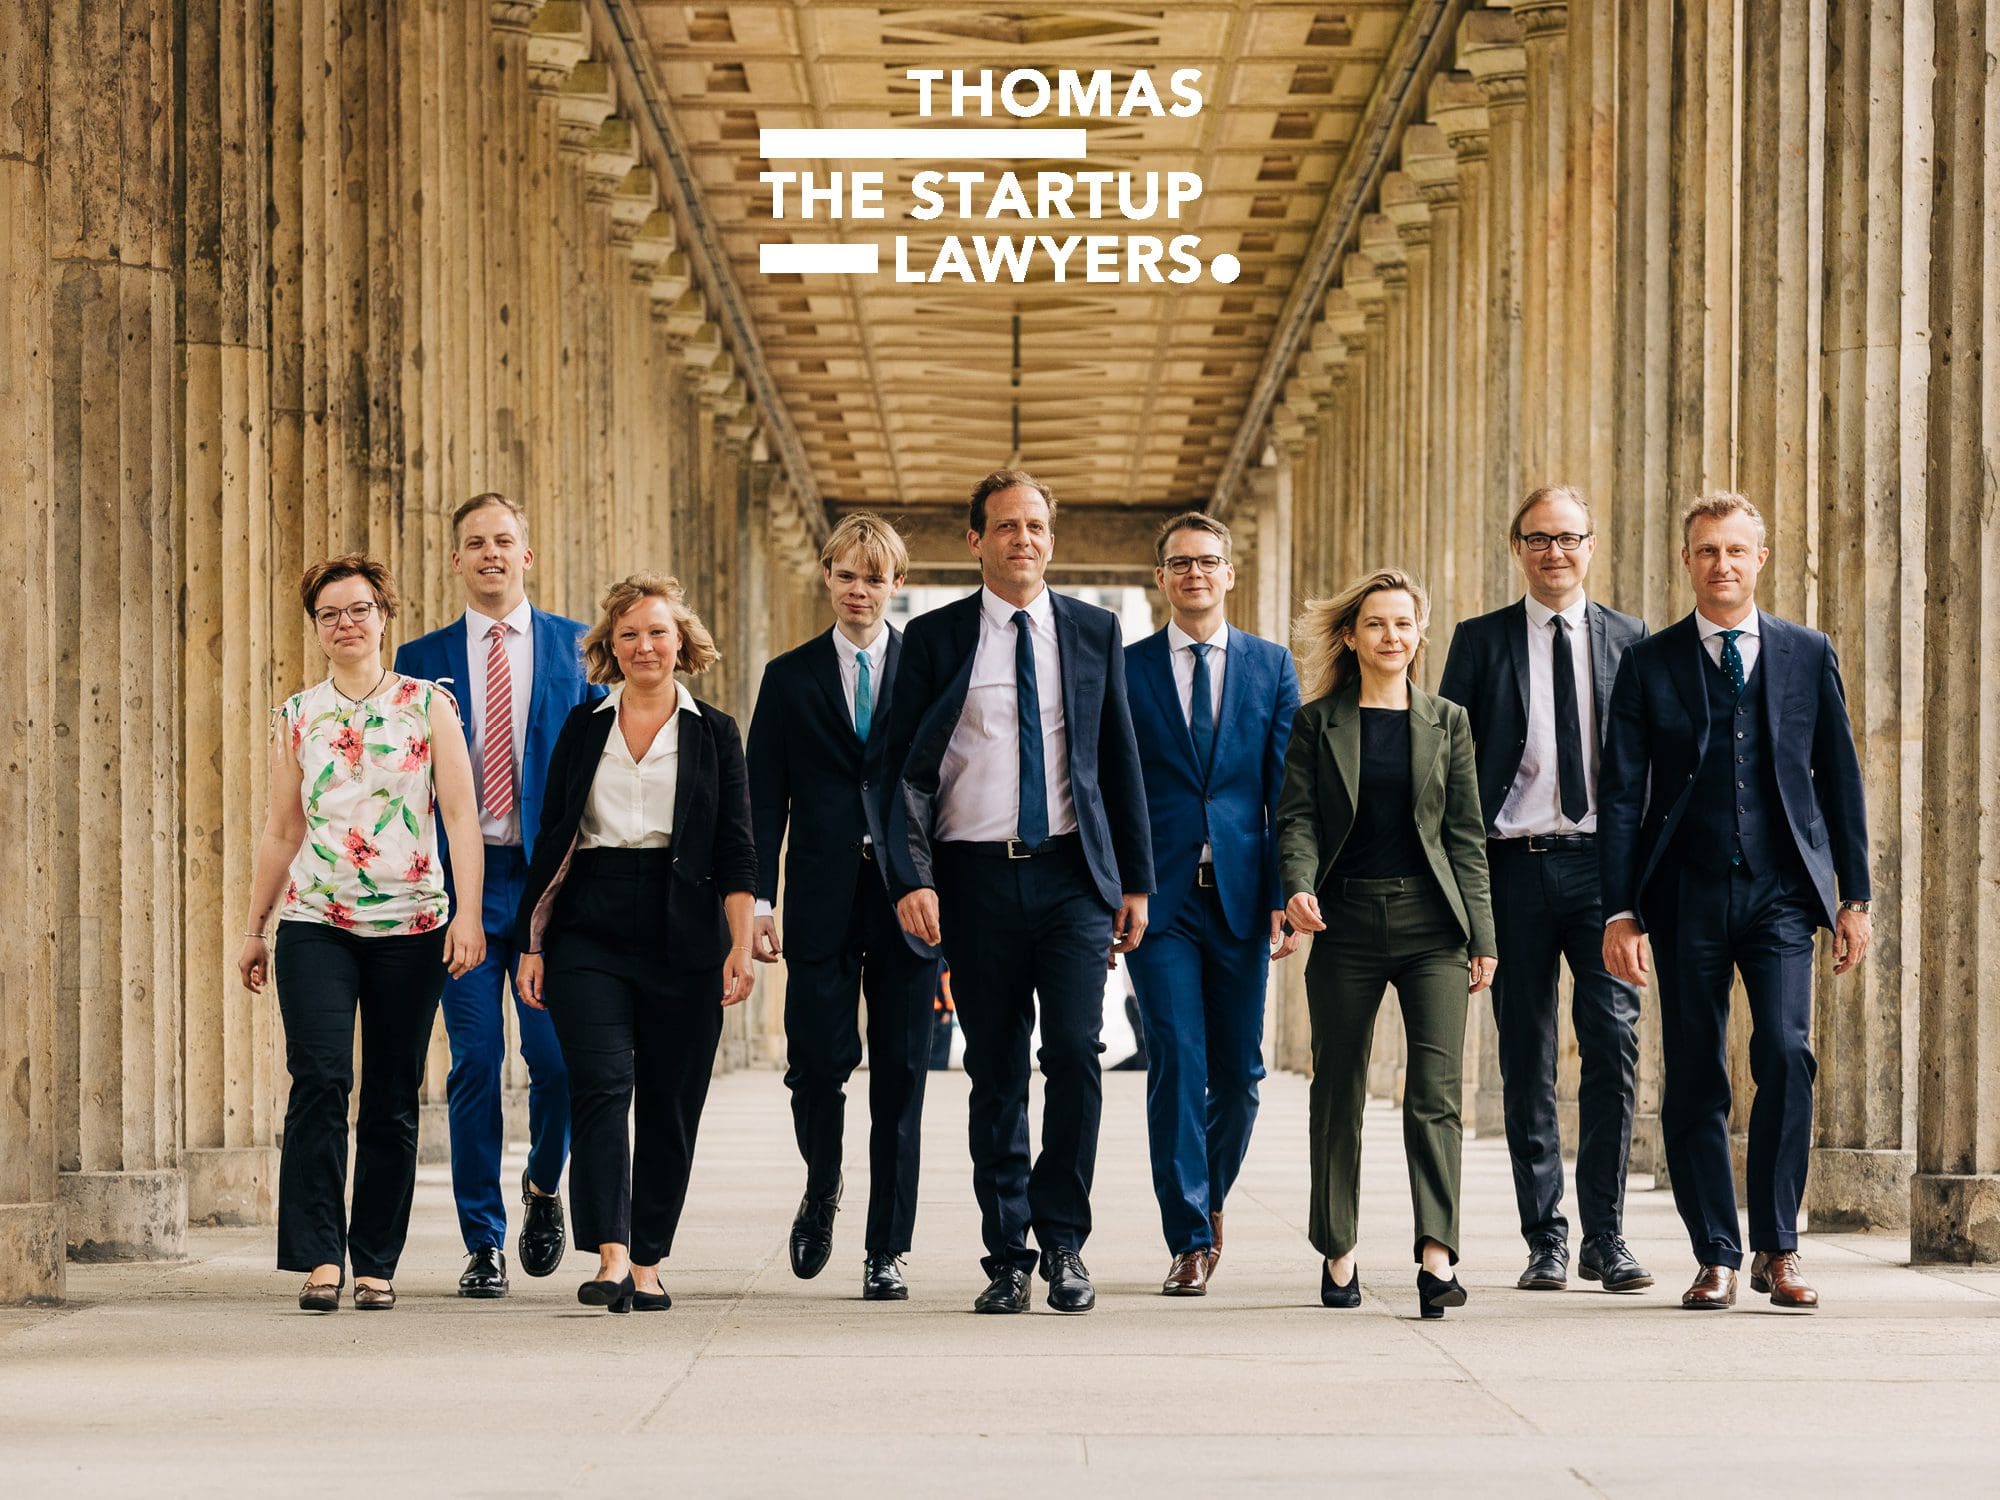 photo de groupe des avocats de Thomas te startup lawyers, une identité signée ichetkar